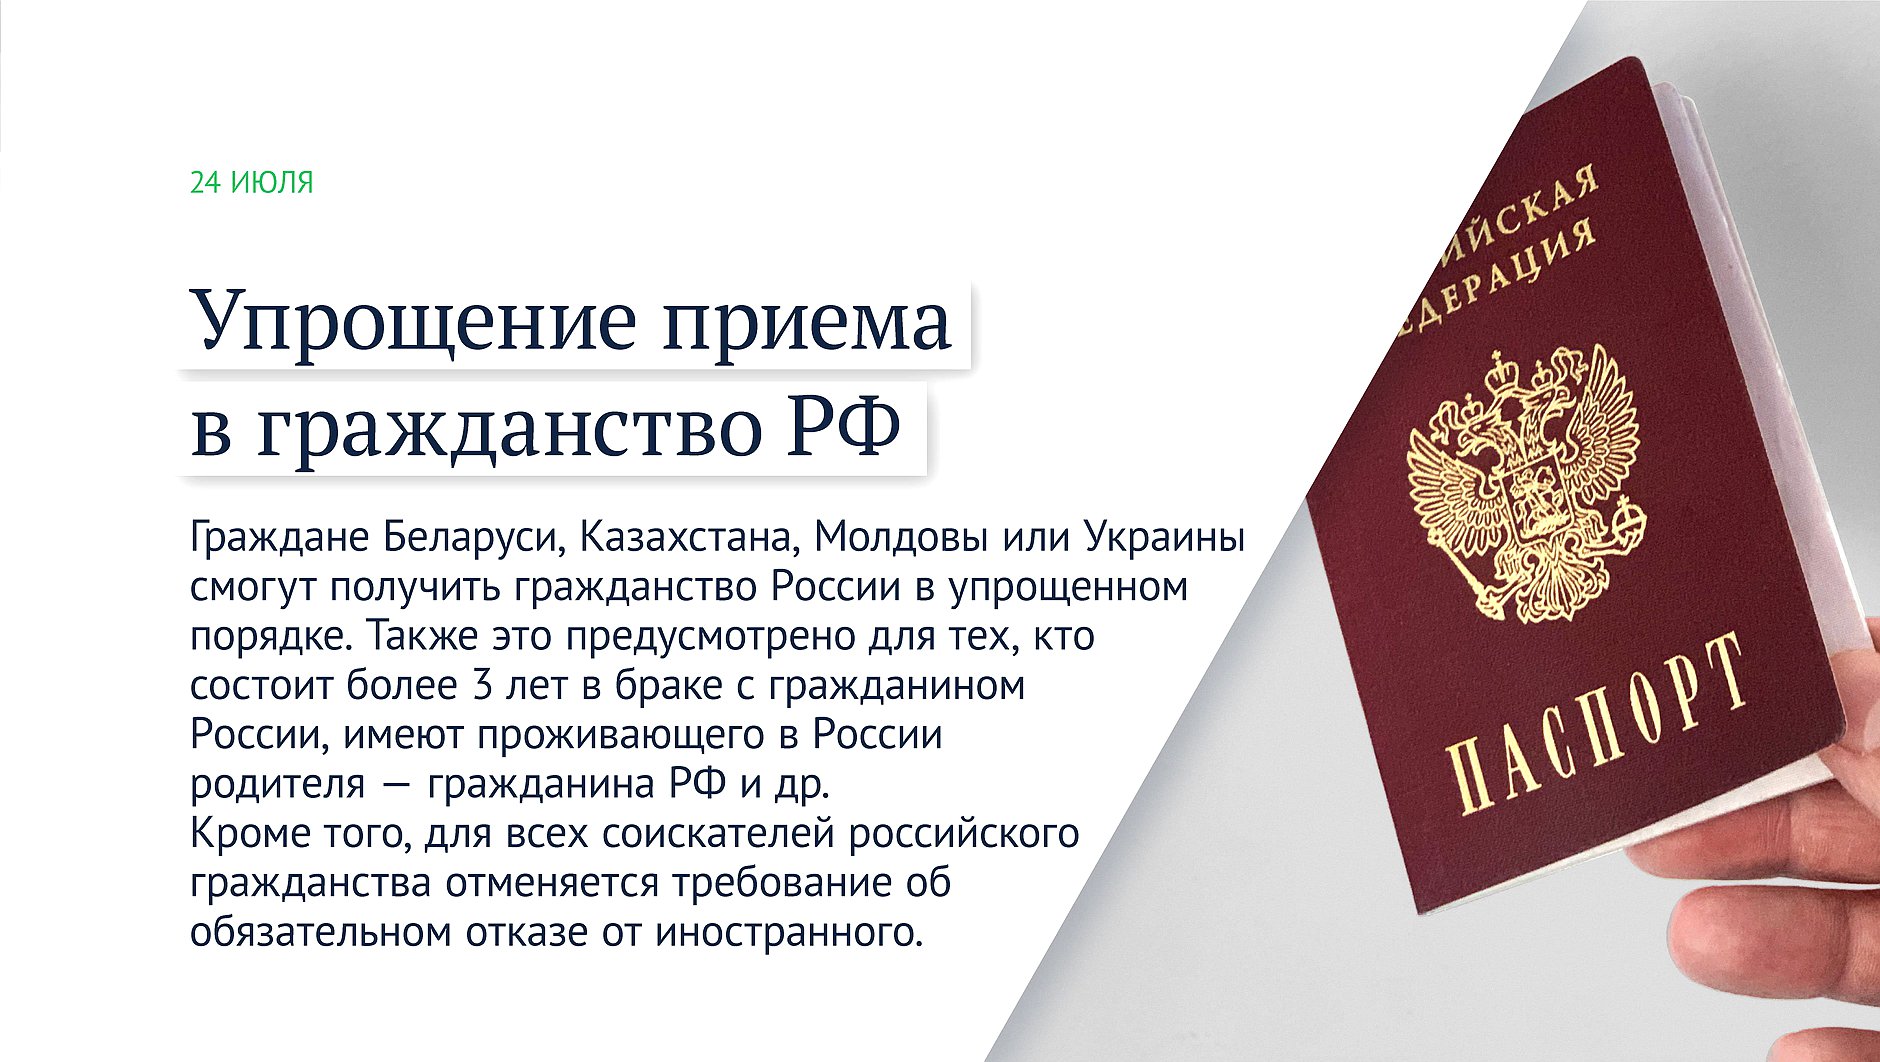 Как получить гражданство эстонии для россиян украинцев белорусов преимущества и недостатки двойное электронное сроки и стоимость экзамен